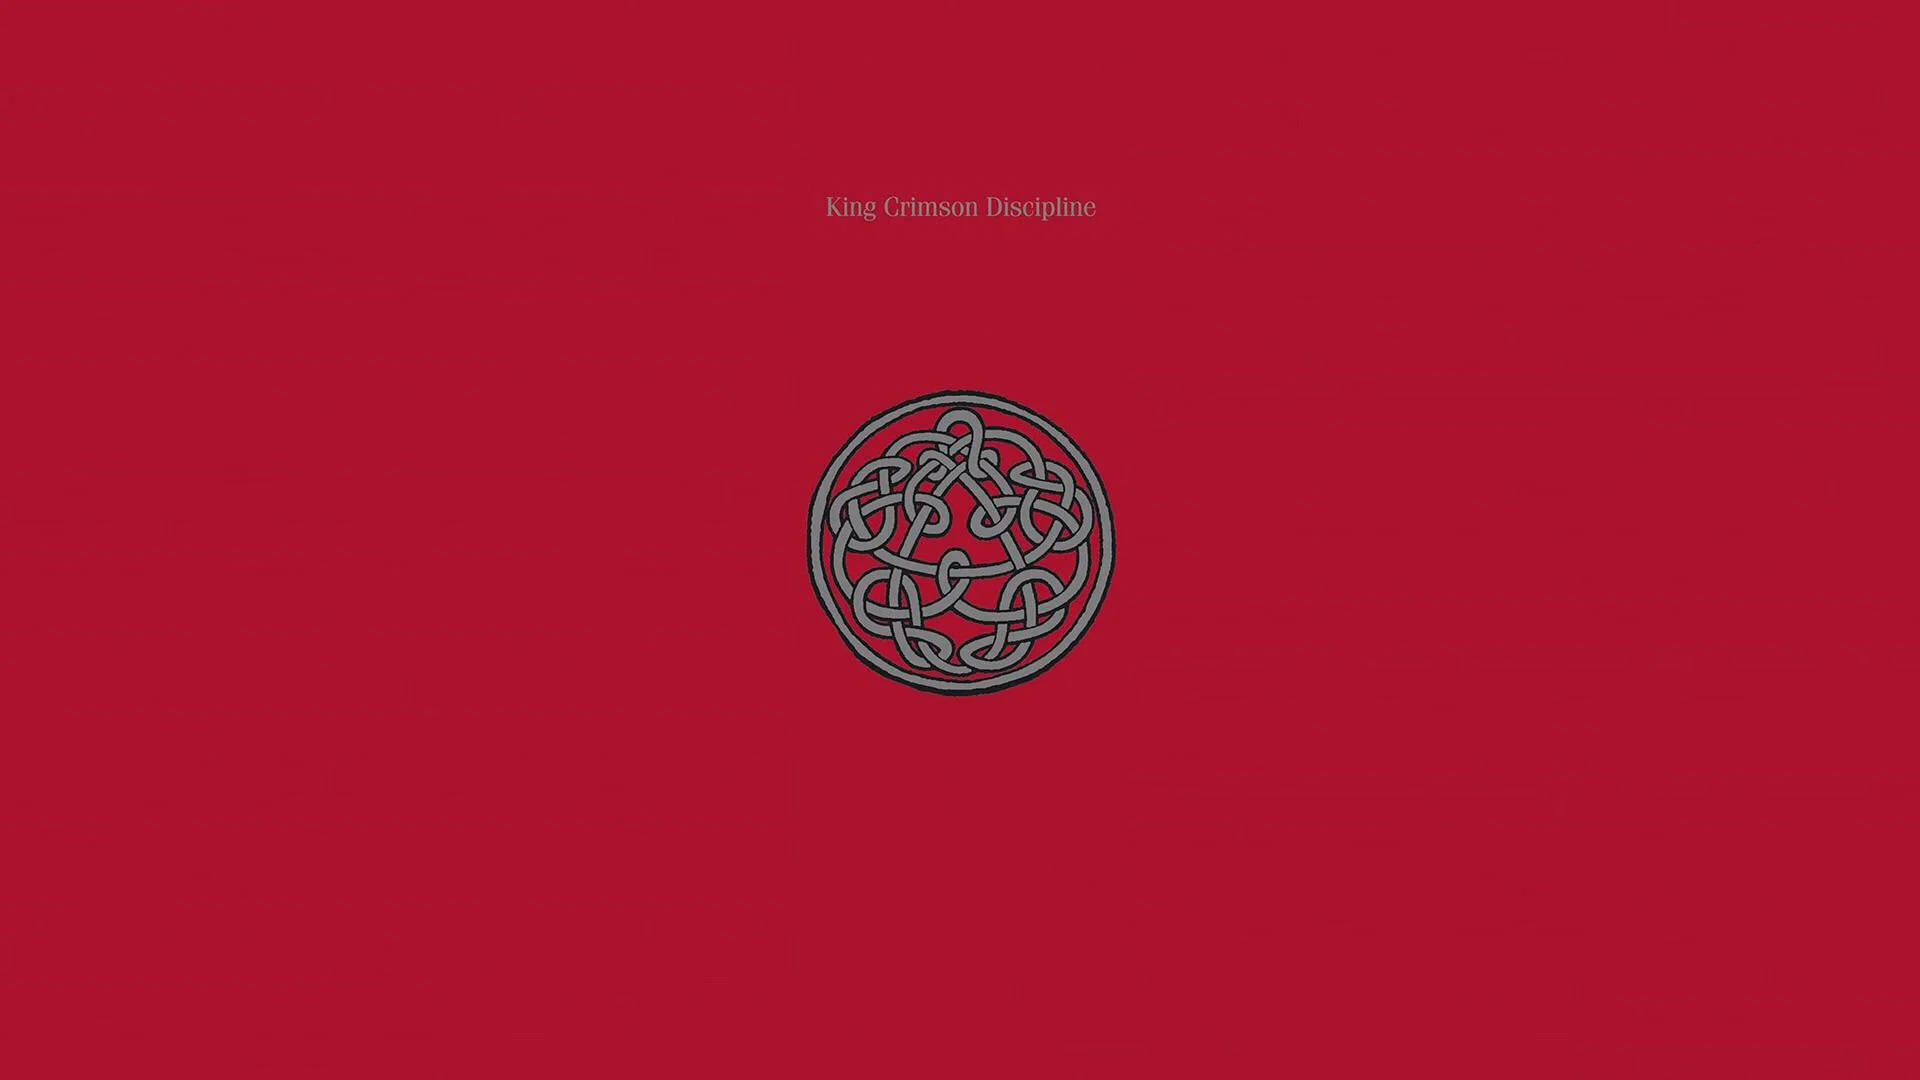 King Crimson Discipline Album Artwork Background